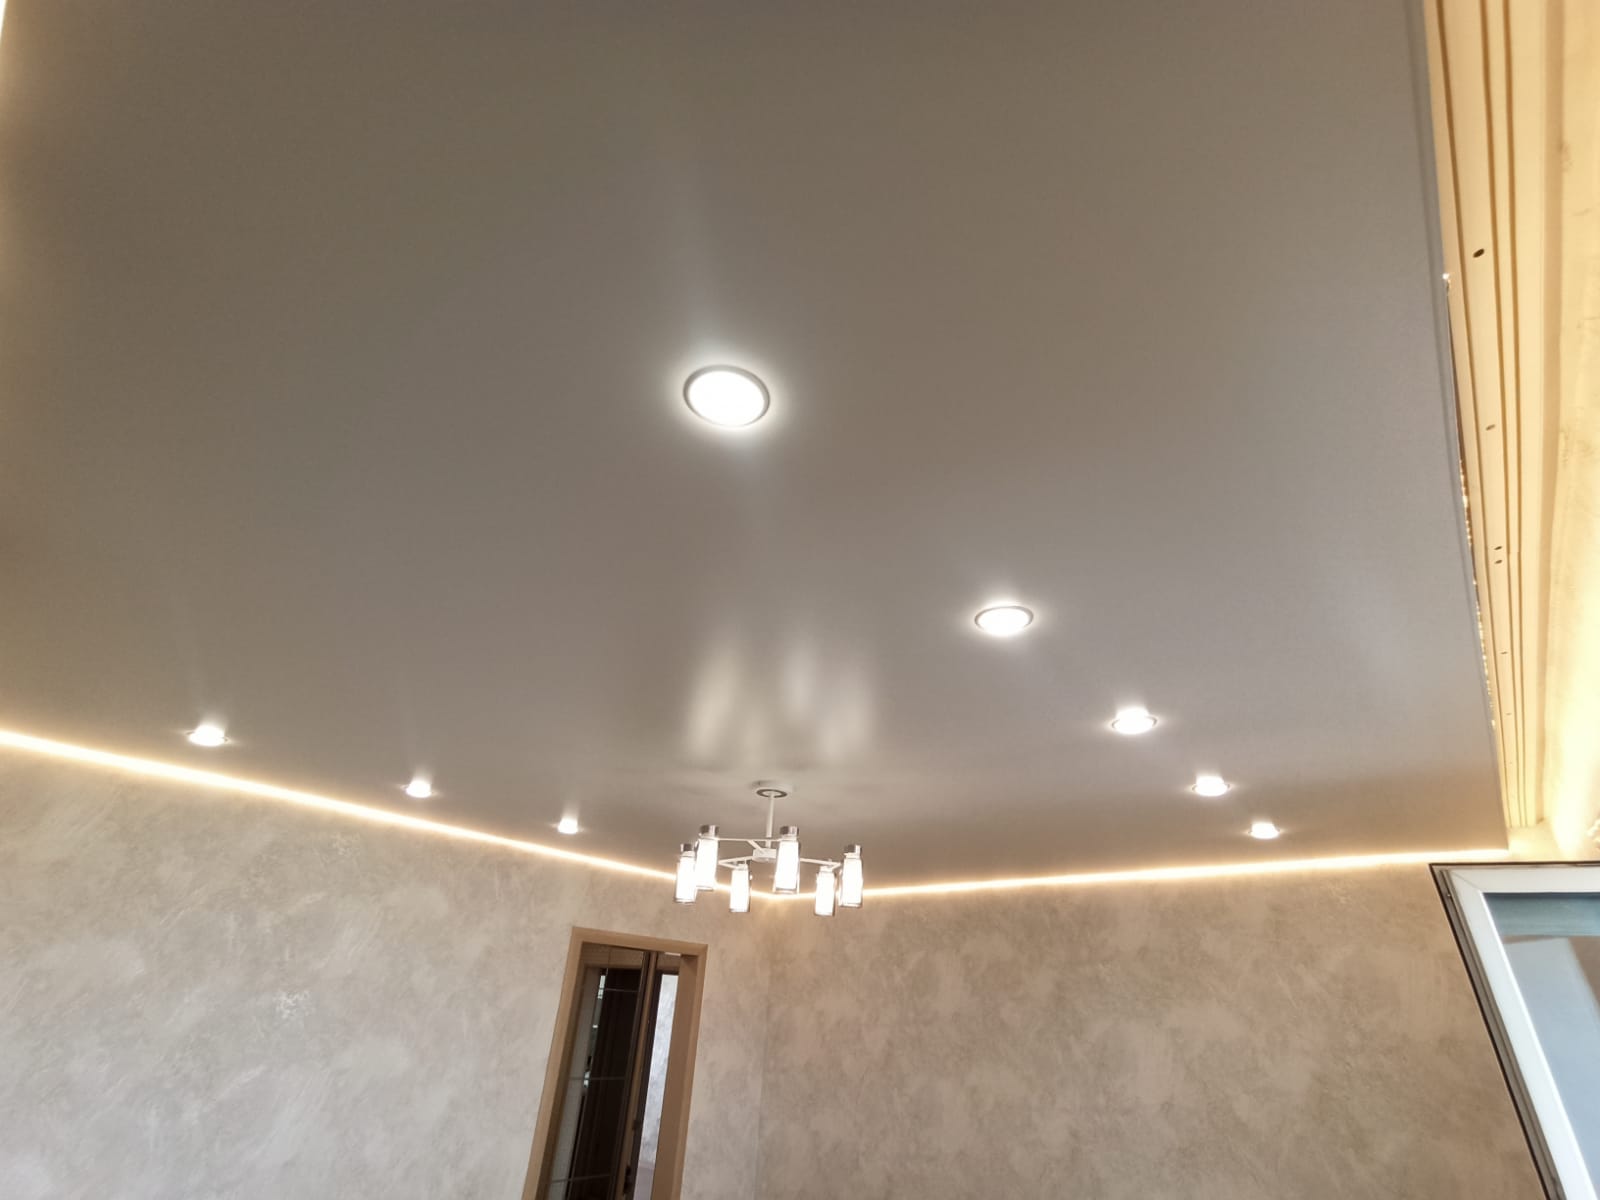 потолок с подсветкой по периметру и карнизом